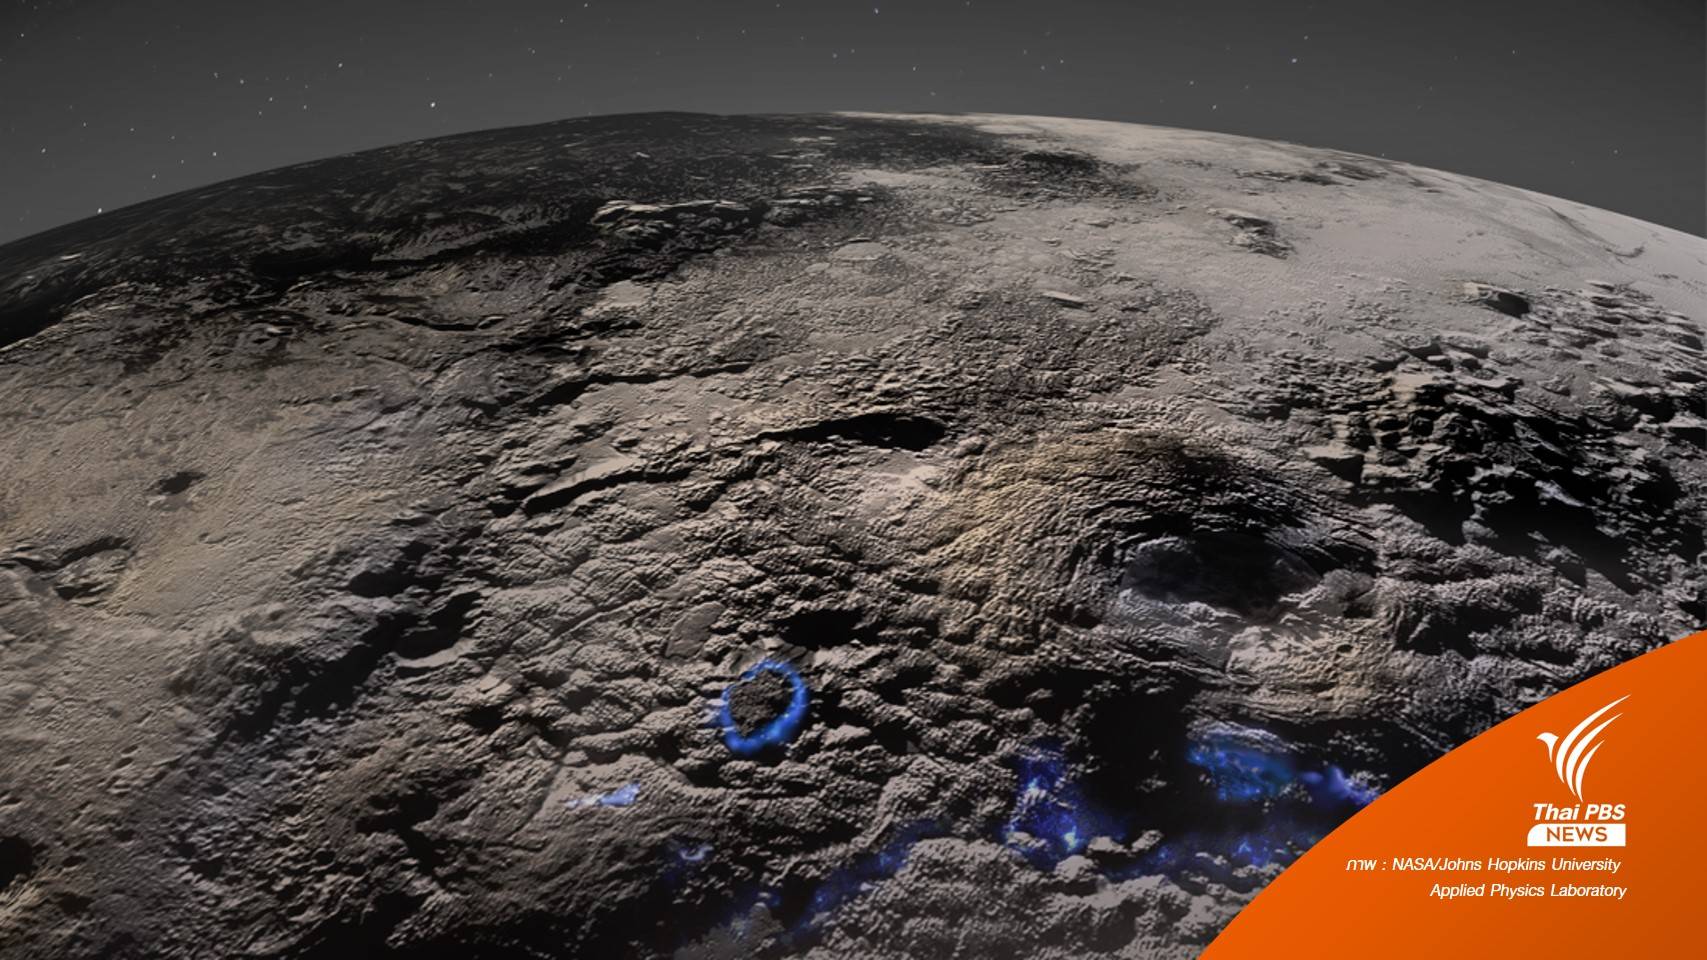 ยานสำรวจอวกาศค้นพบ "ภูเขาไฟน้ำแข็ง" บน​ดาวพลูโต